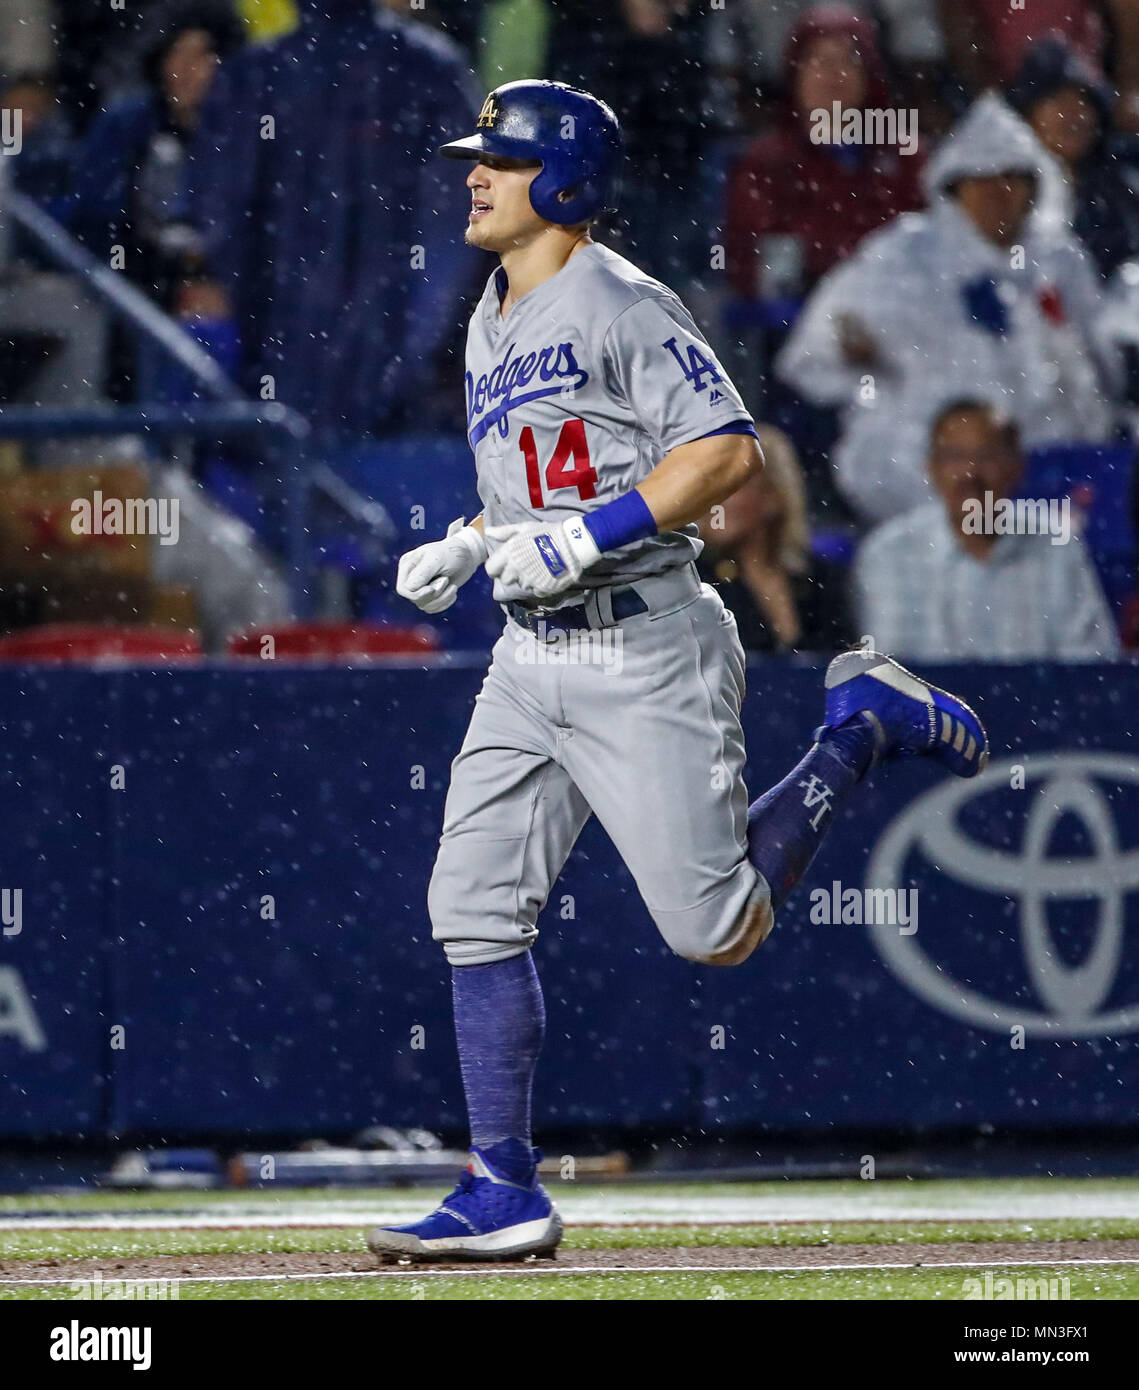 Enrique Hernandez de los Dodgers conecta cuadrangular, durante el partido de beisbol de los Dodgers de Los Angeles contra Padres de San Diego, durante el primer juego de la serie las Ligas Mayores del Beisbol en Monterrey, Mexico el 4 de Mayo 2018. (Photo: Luis Gutierrez) Stock Photo